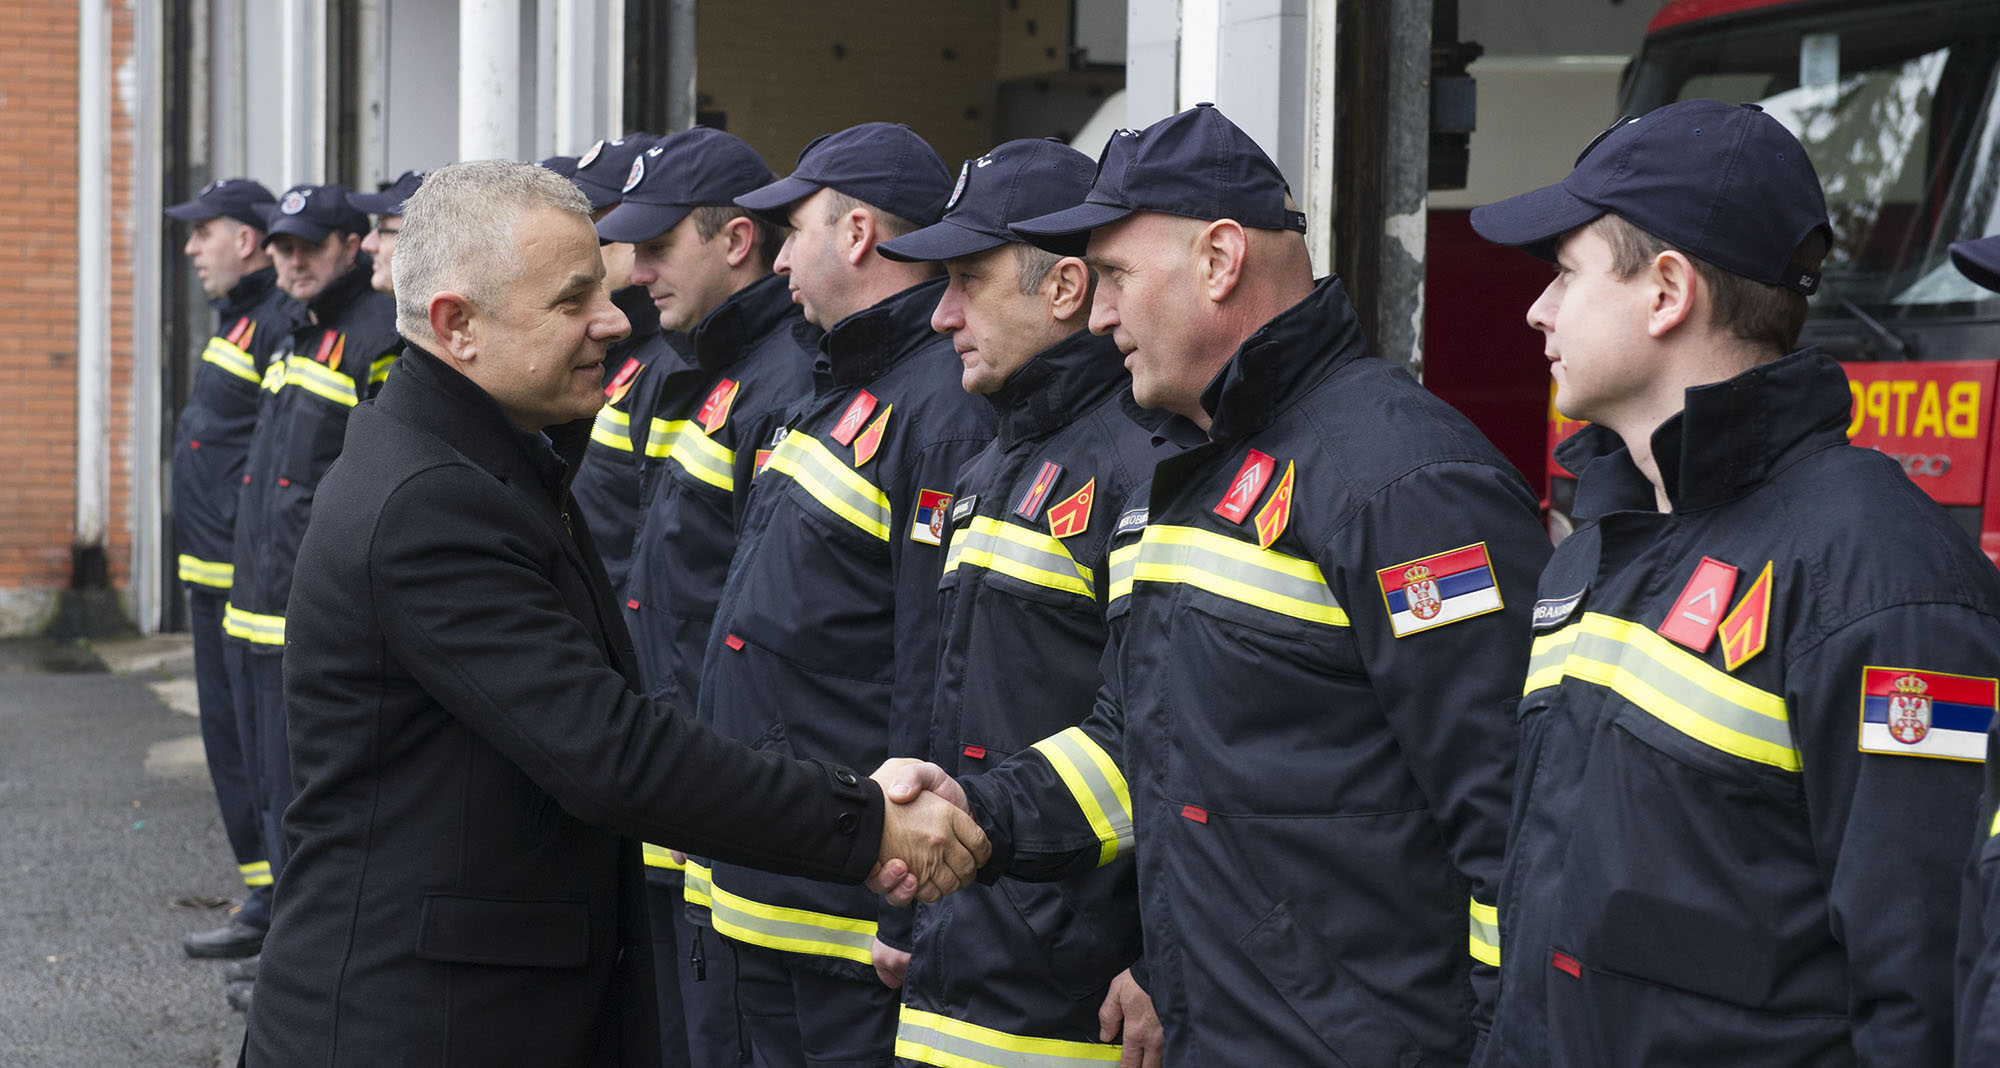  Državni sekretar Miličković pohvalio pripadnike Sektora za vanredne situacije